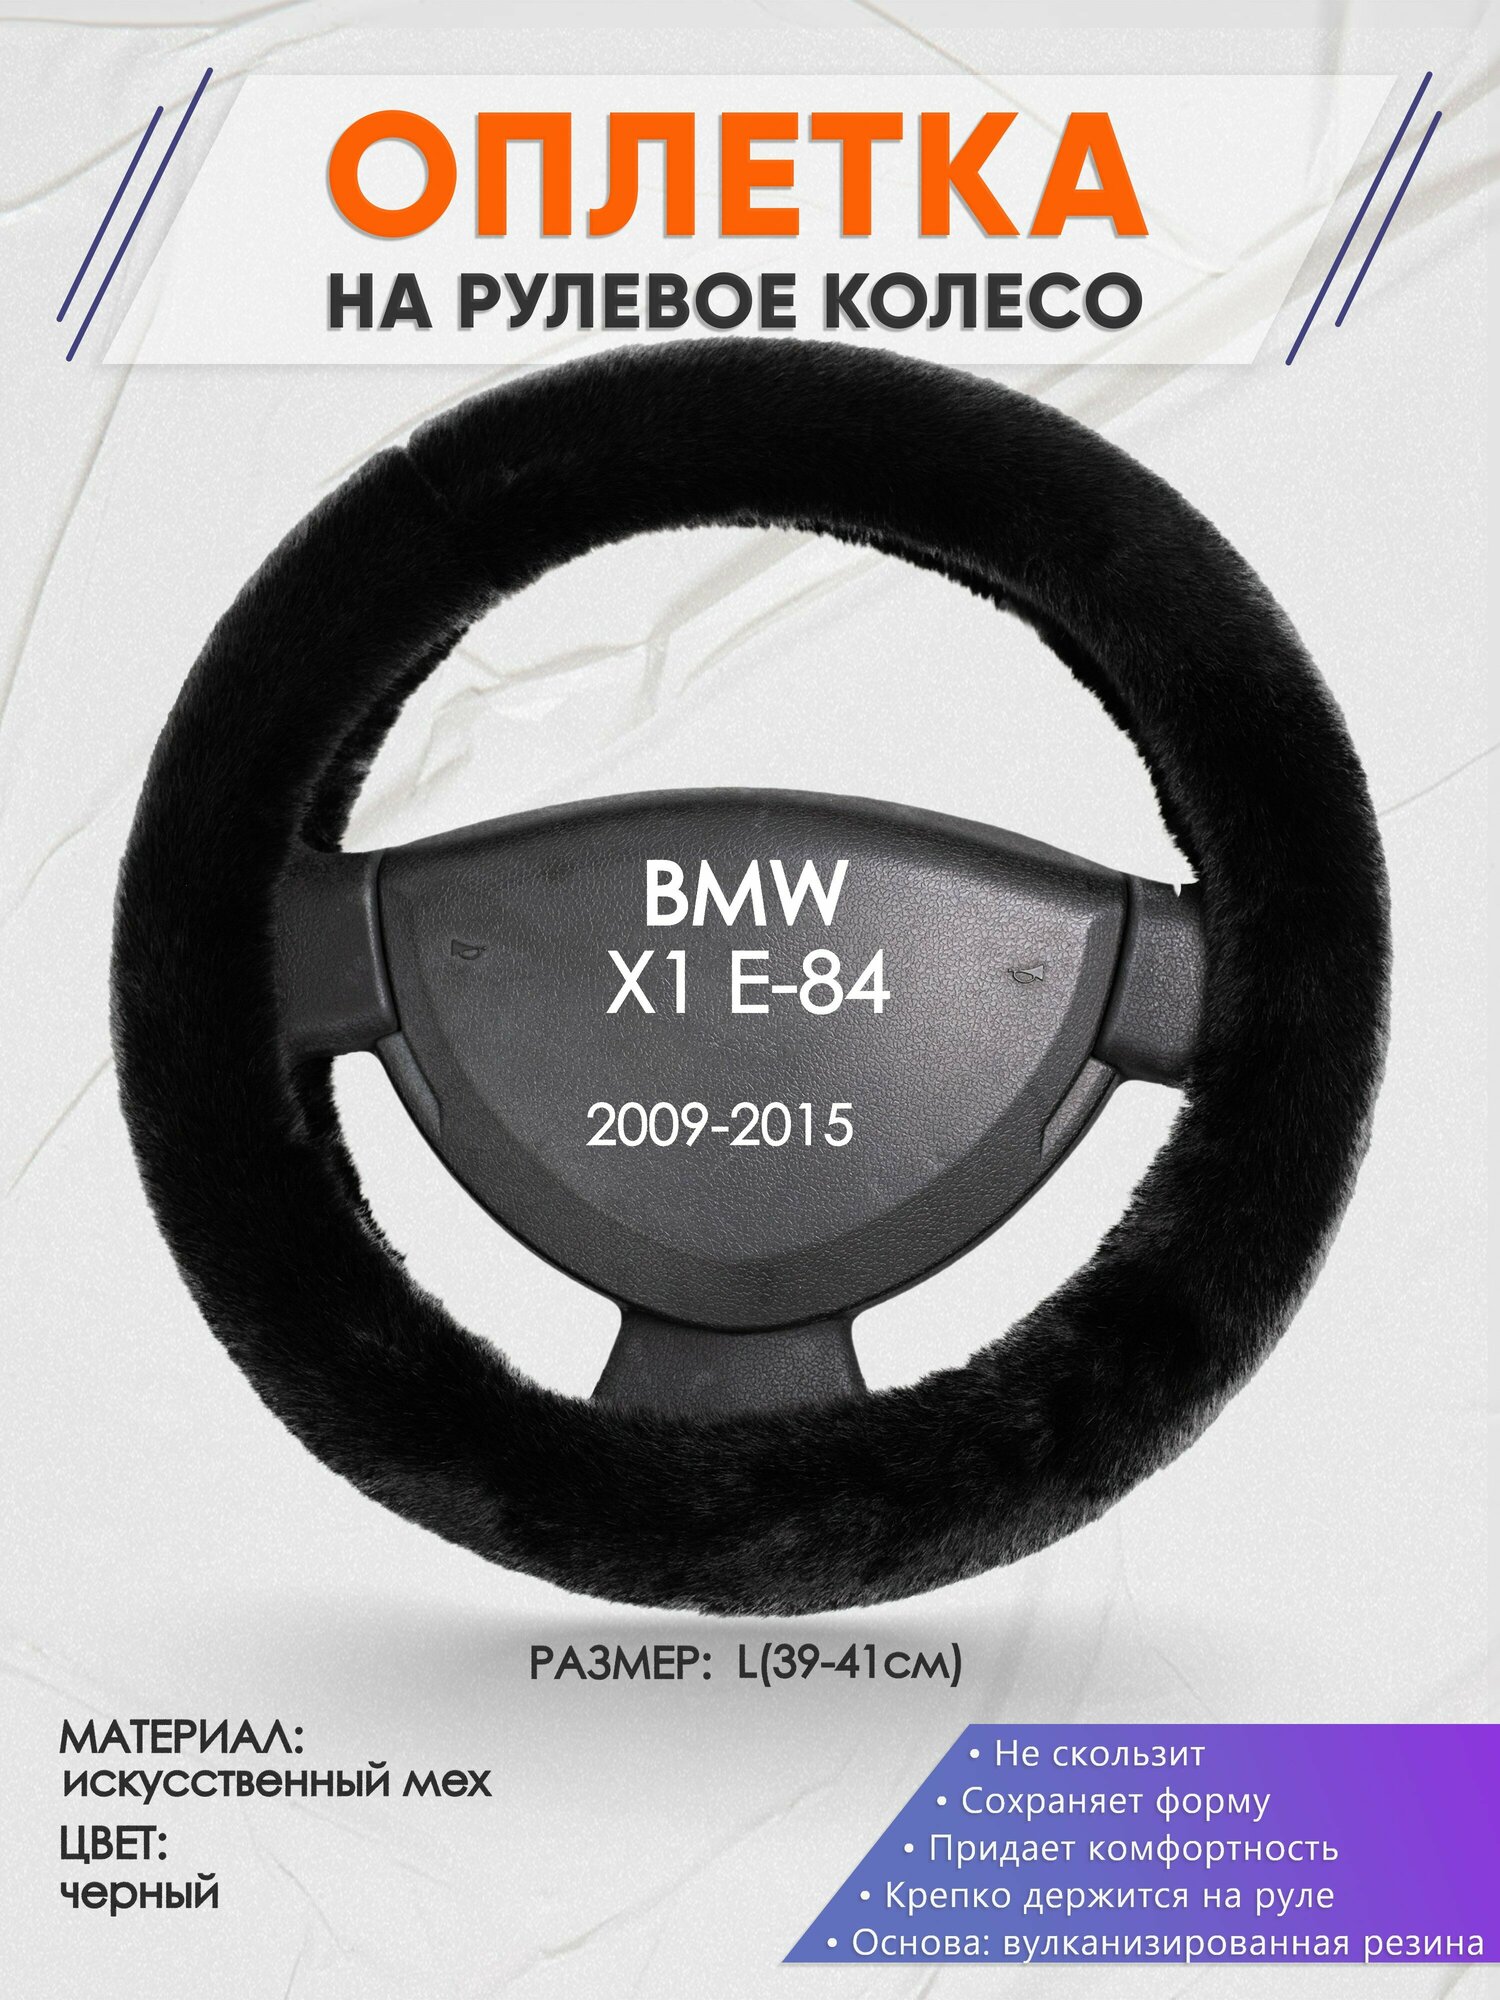 Оплетка на руль для BMW X1 E-84(БМВ икс 1 е84) 2009-2015 L(39-41см) Искусственный мех 45